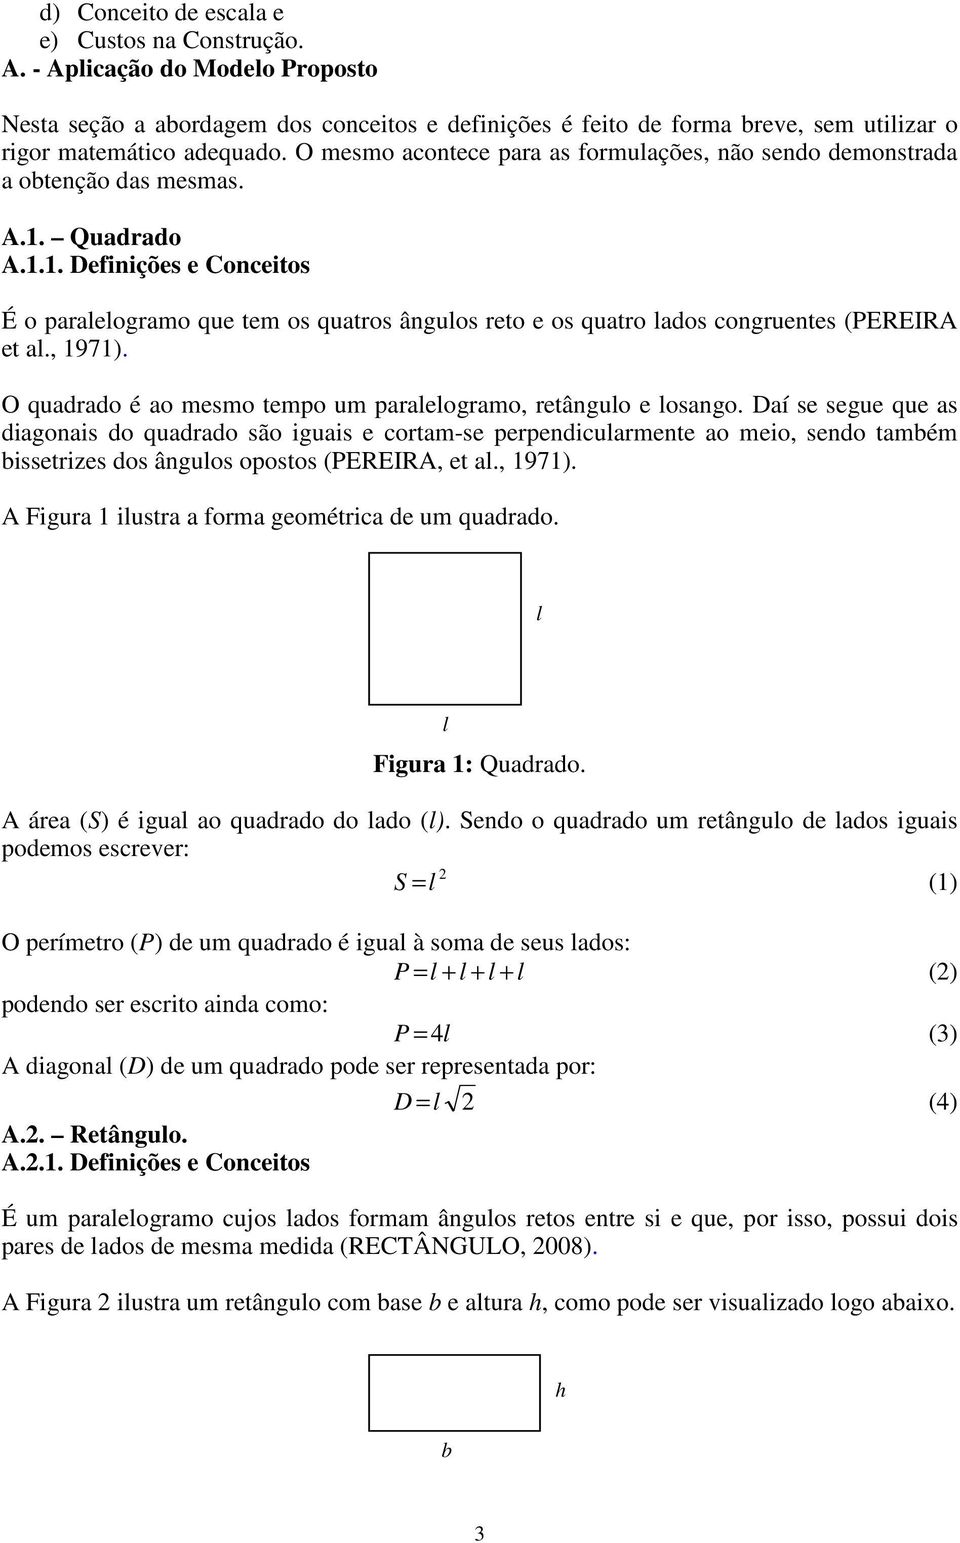 Quadrado A.1.1. Definições e Conceitos É o paralelogramo que tem os quatros ângulos reto e os quatro lados congruentes (PEREIRA et al., 1971).